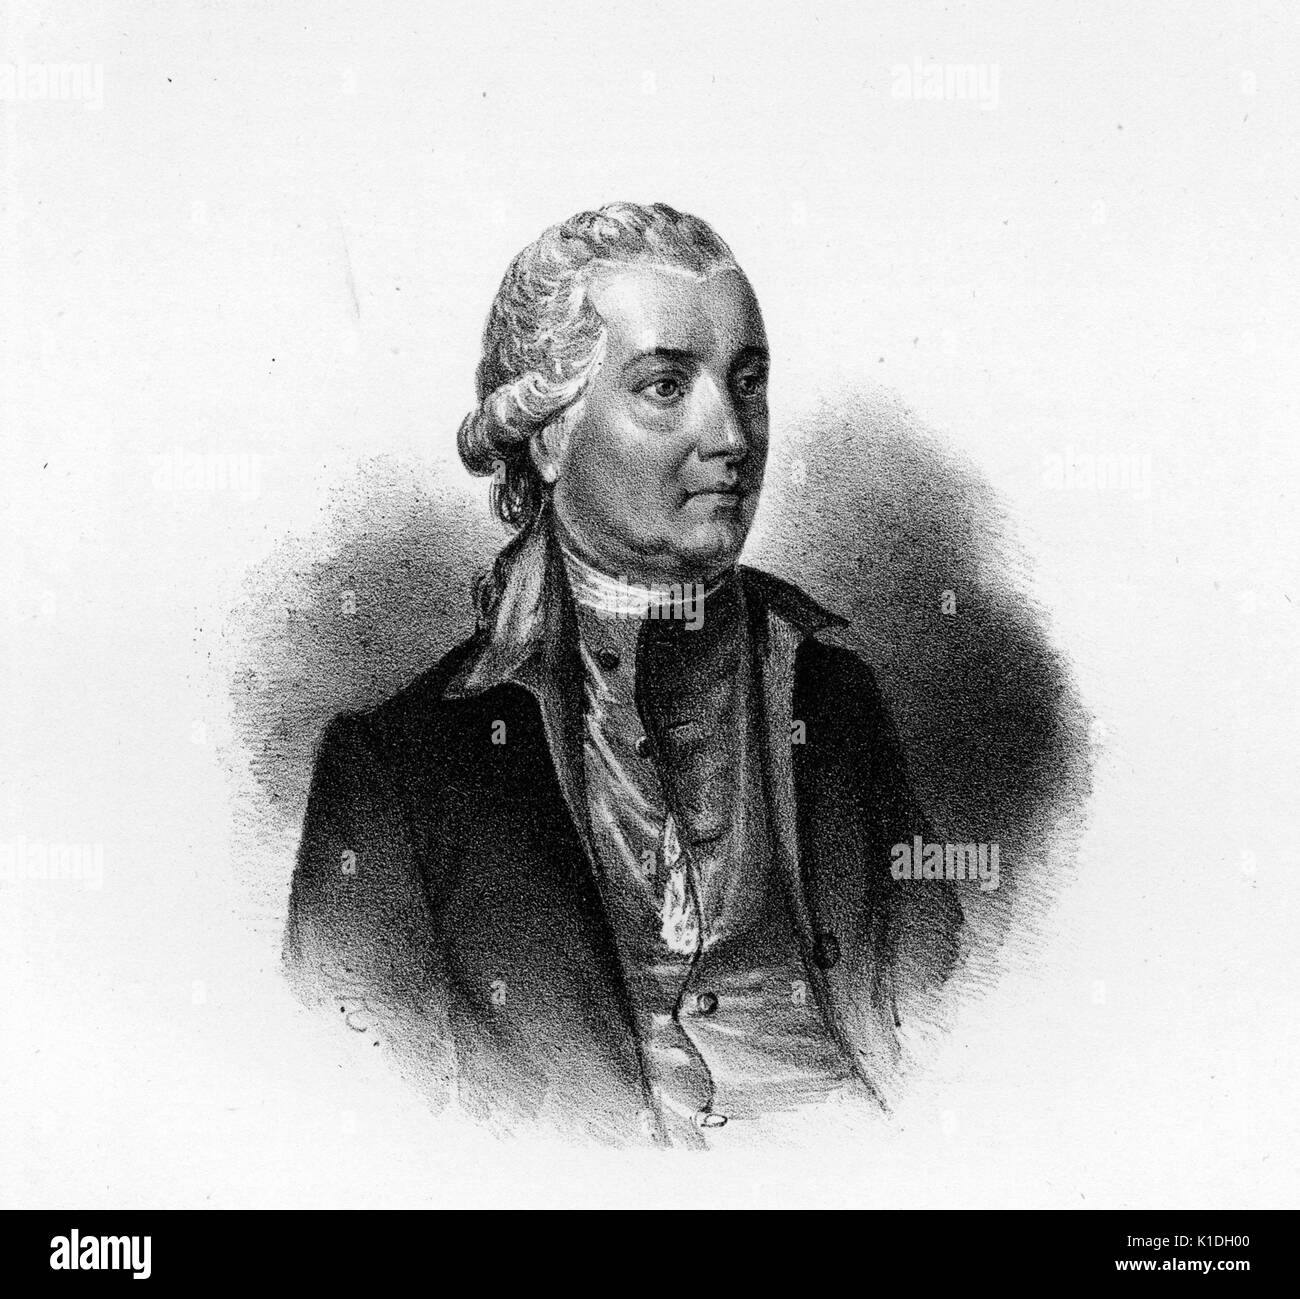 Sir John Tempel, der britische Generalkonsul in die Vereinigten Staaten, 1800. Von der New York Public Library. Stockfoto